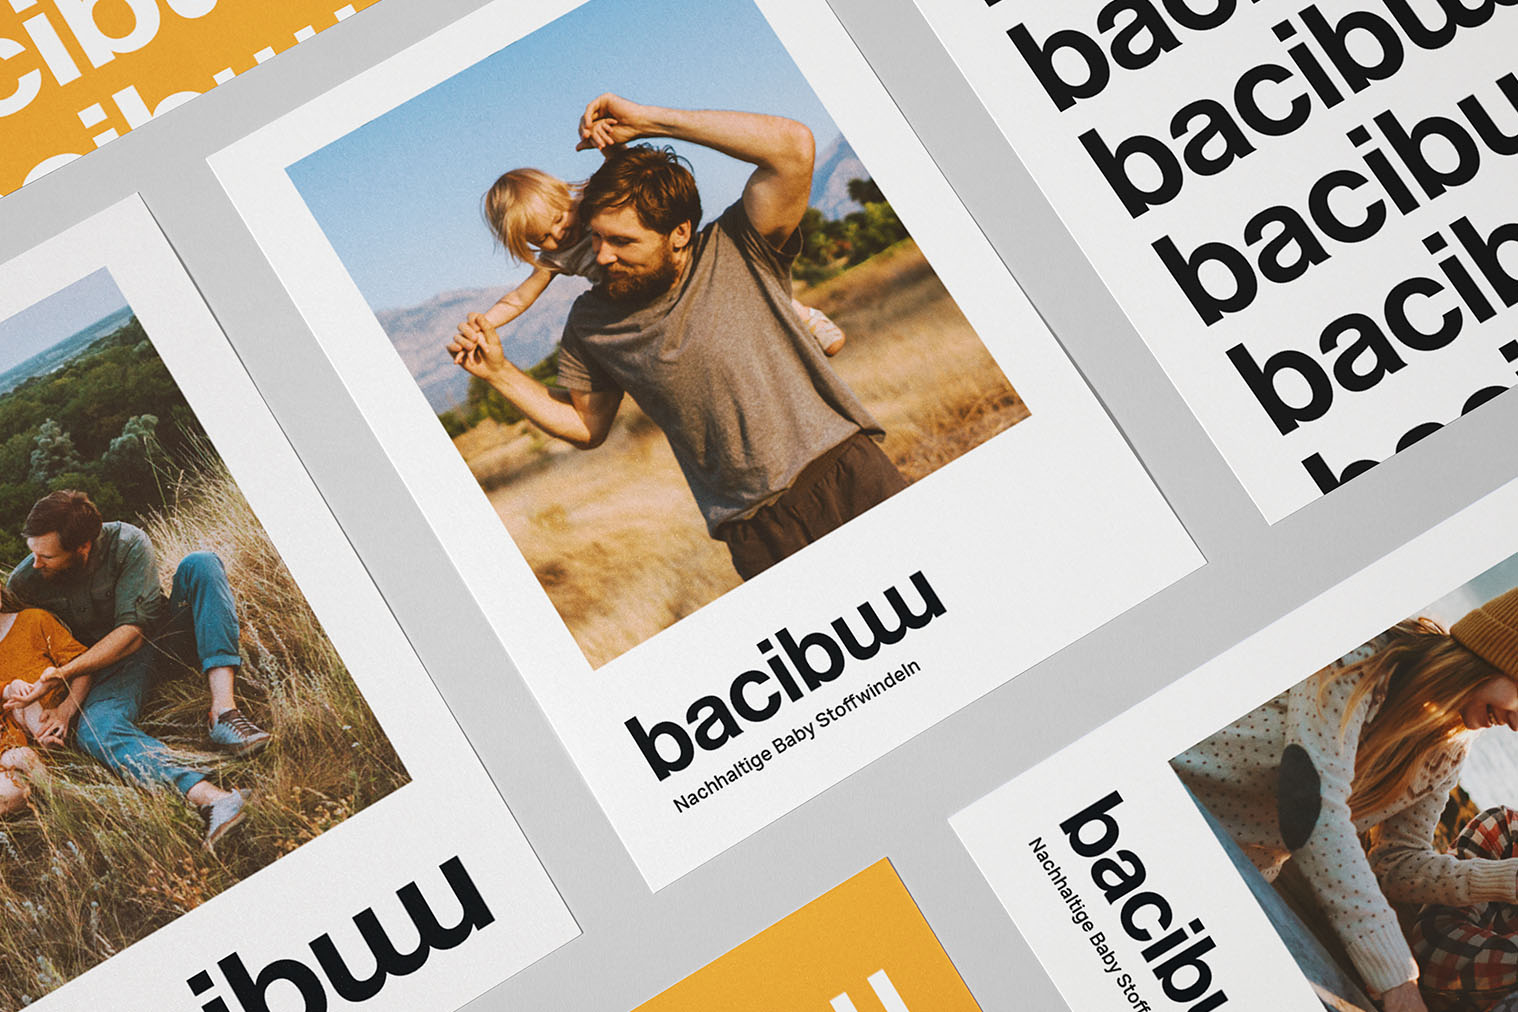 Brand Design digital für Bacibu Stoffwindeln